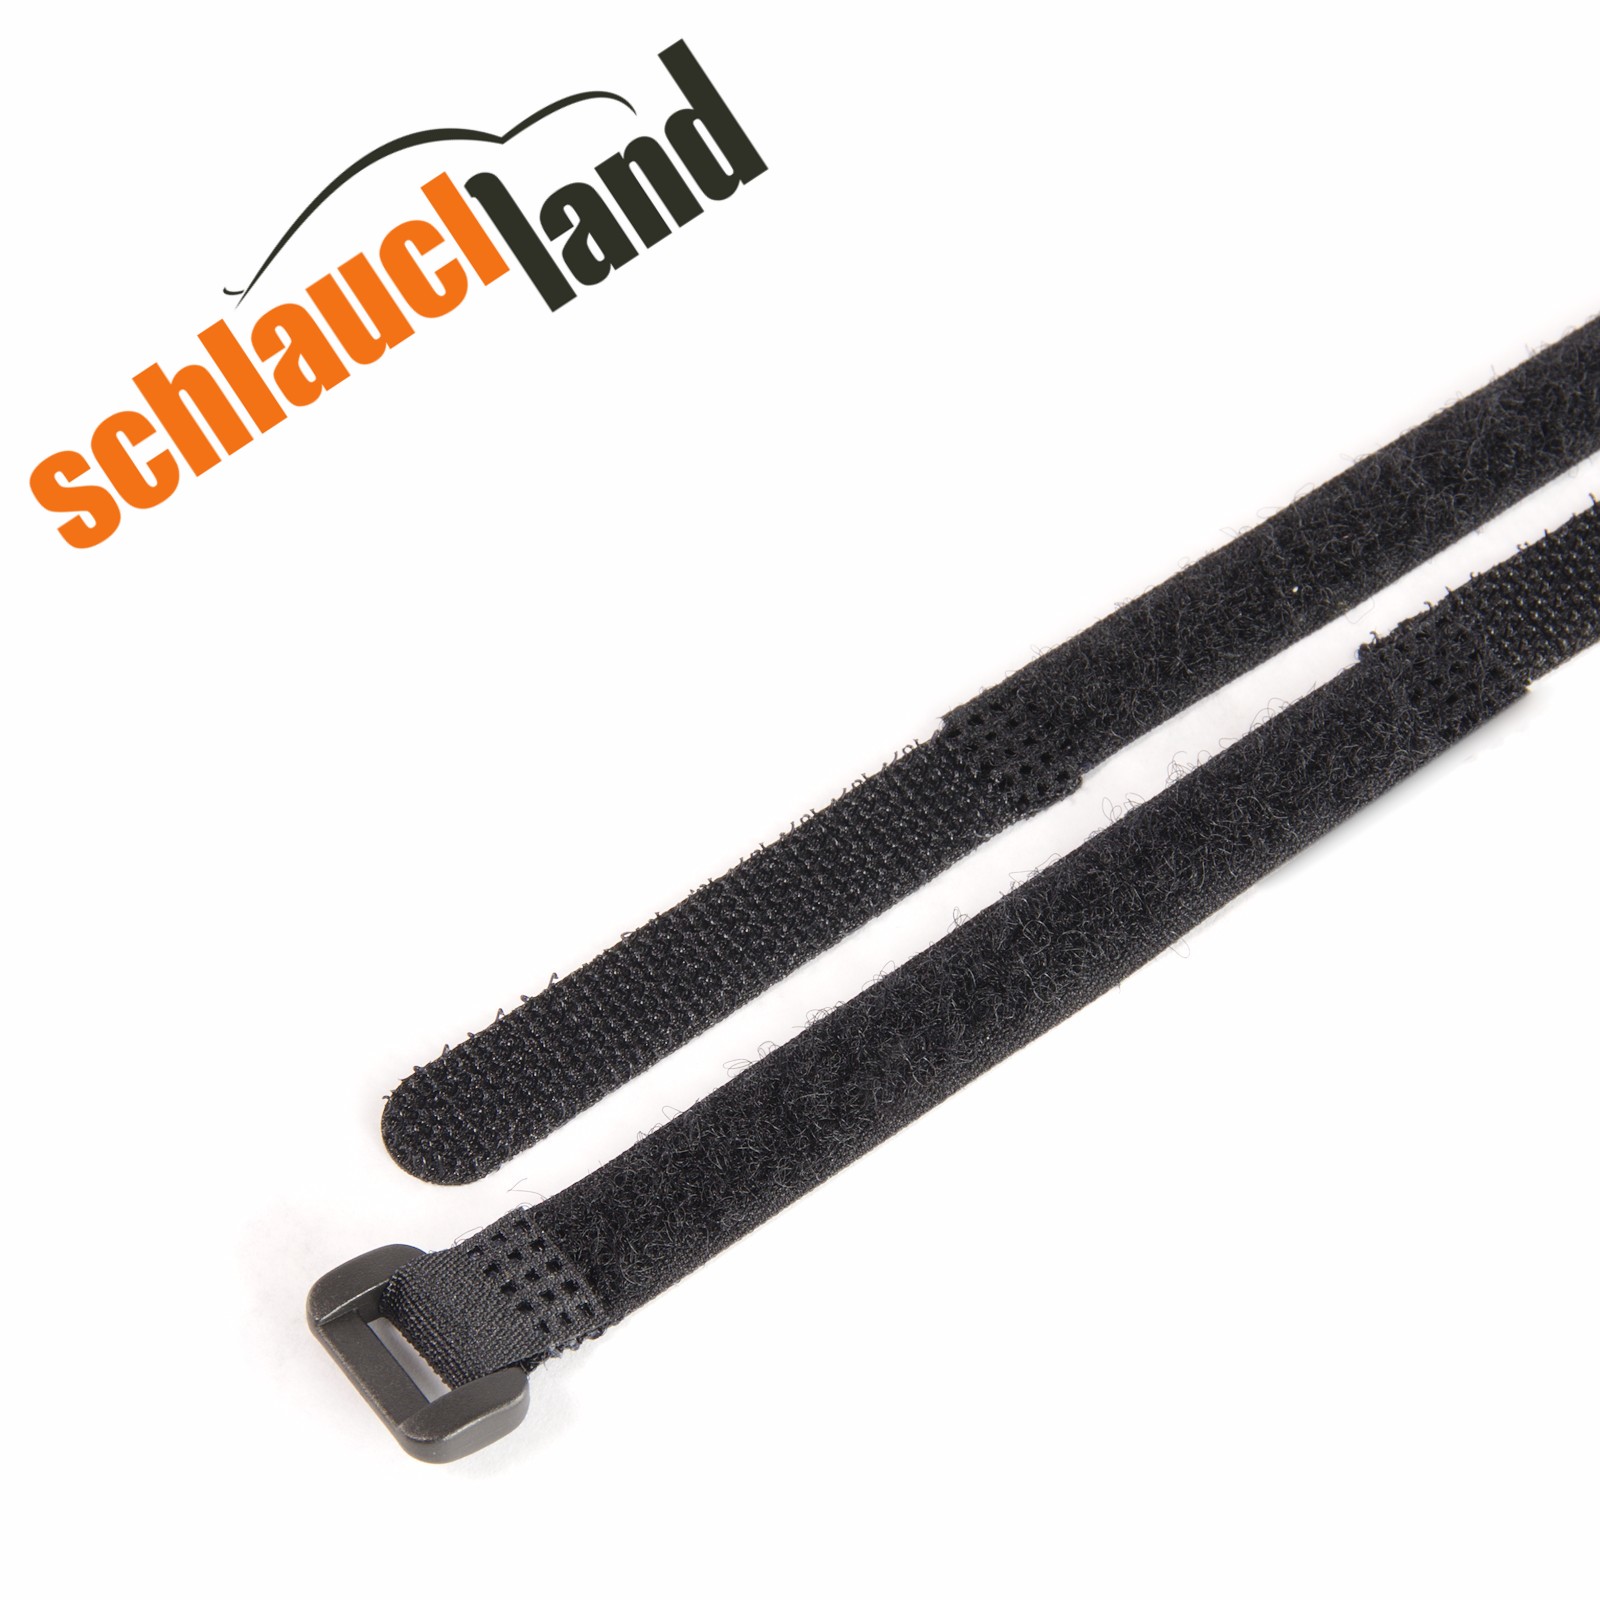 Klettband Klettkabelbinder Kabelbinder Klettverschluss 1m 100cm1000x19mm schwarz 